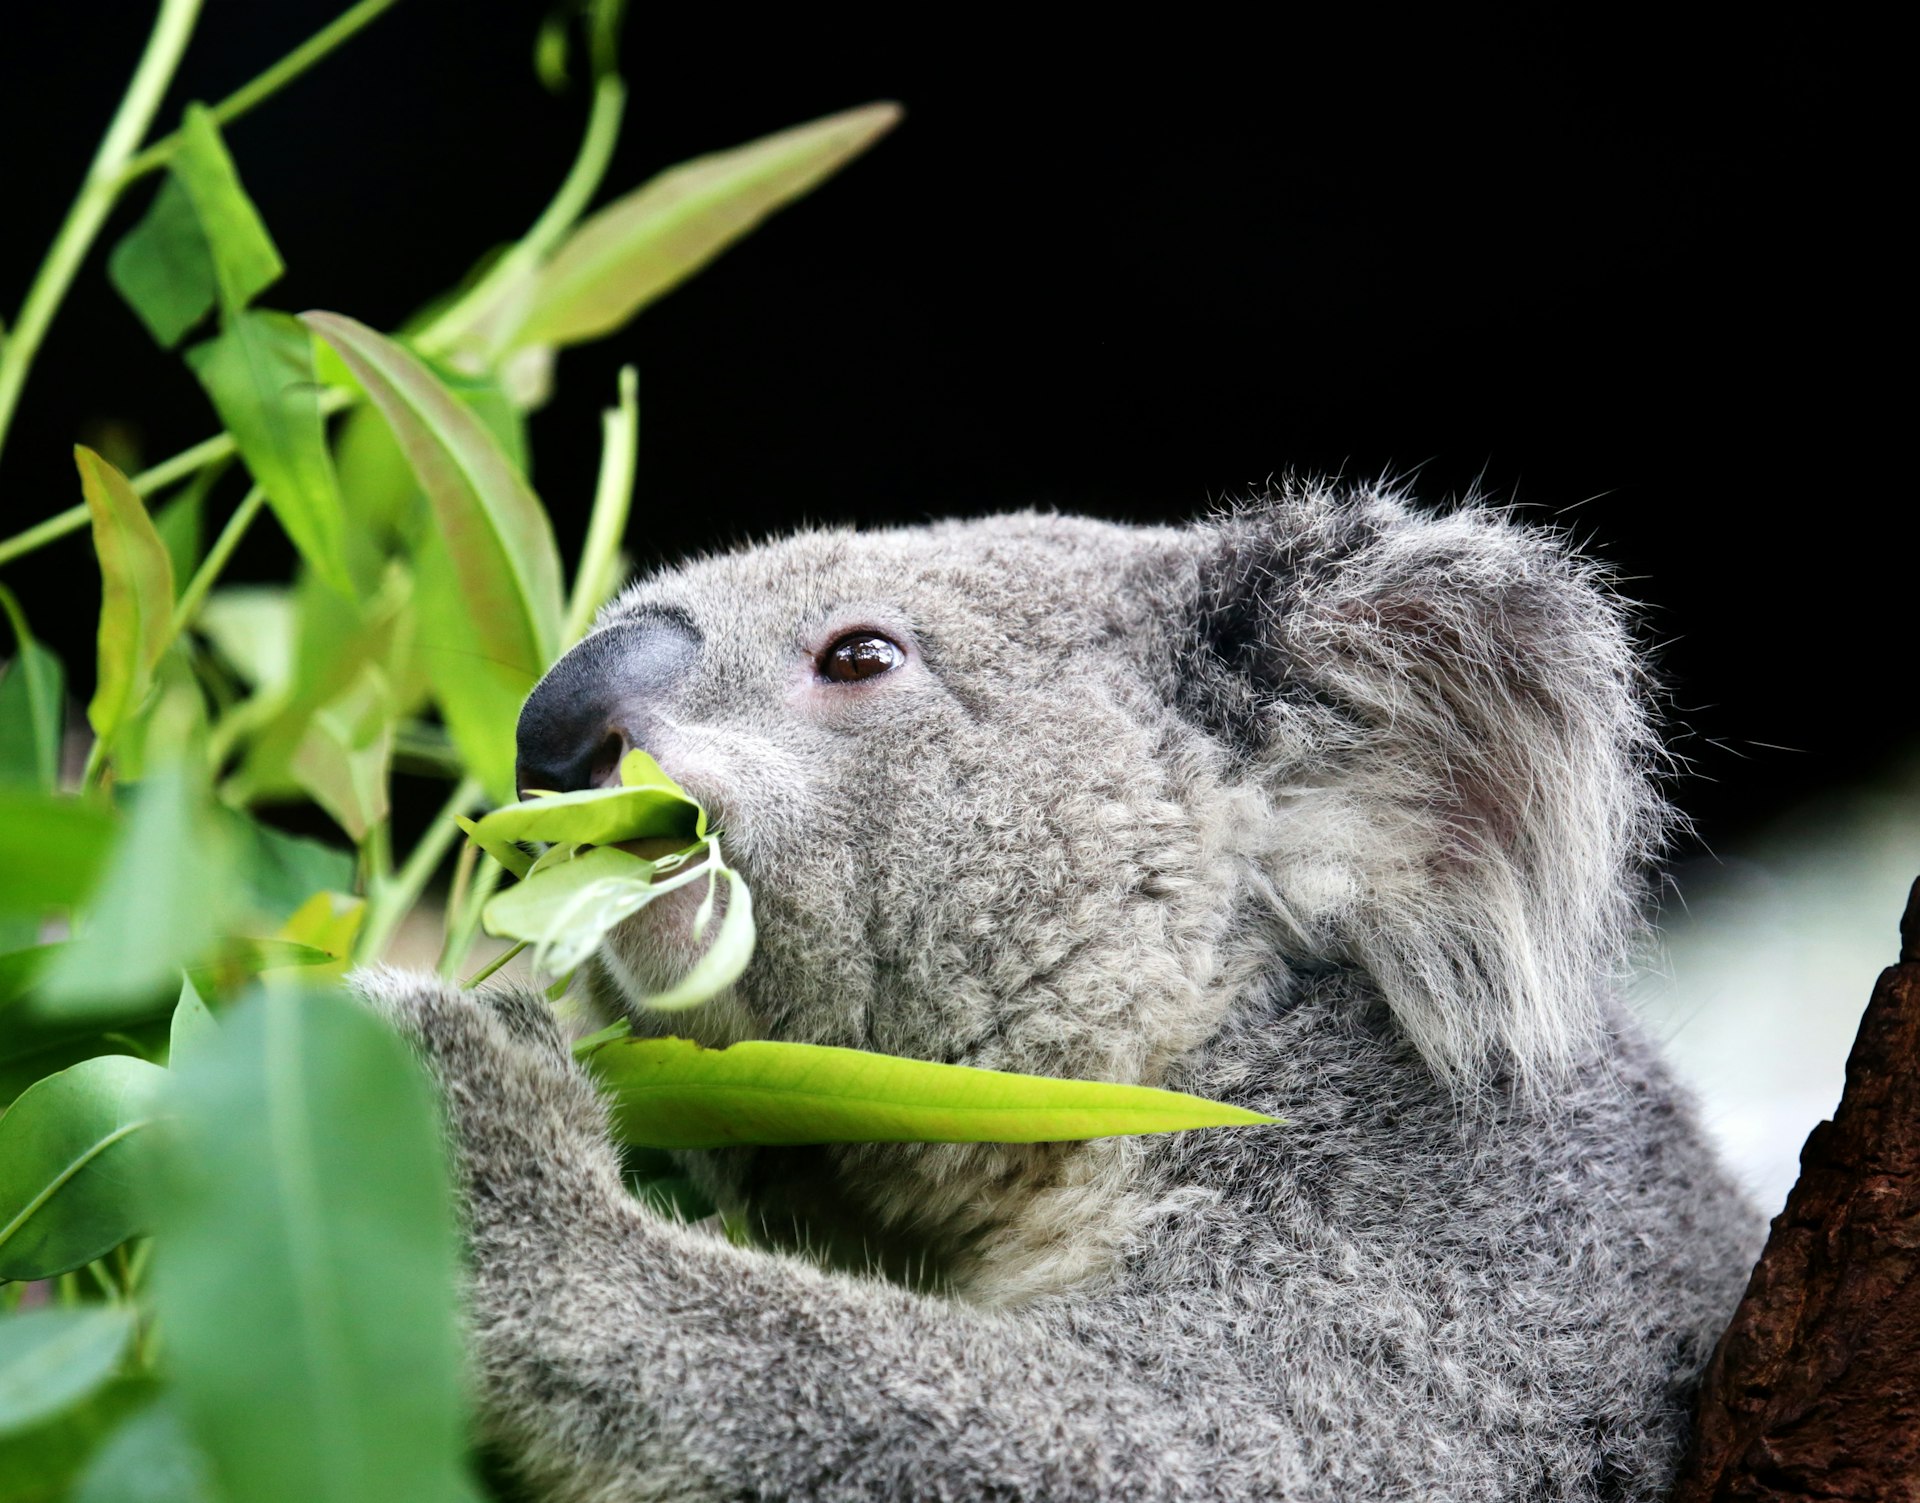 A koala eating eucalyptus leaves 